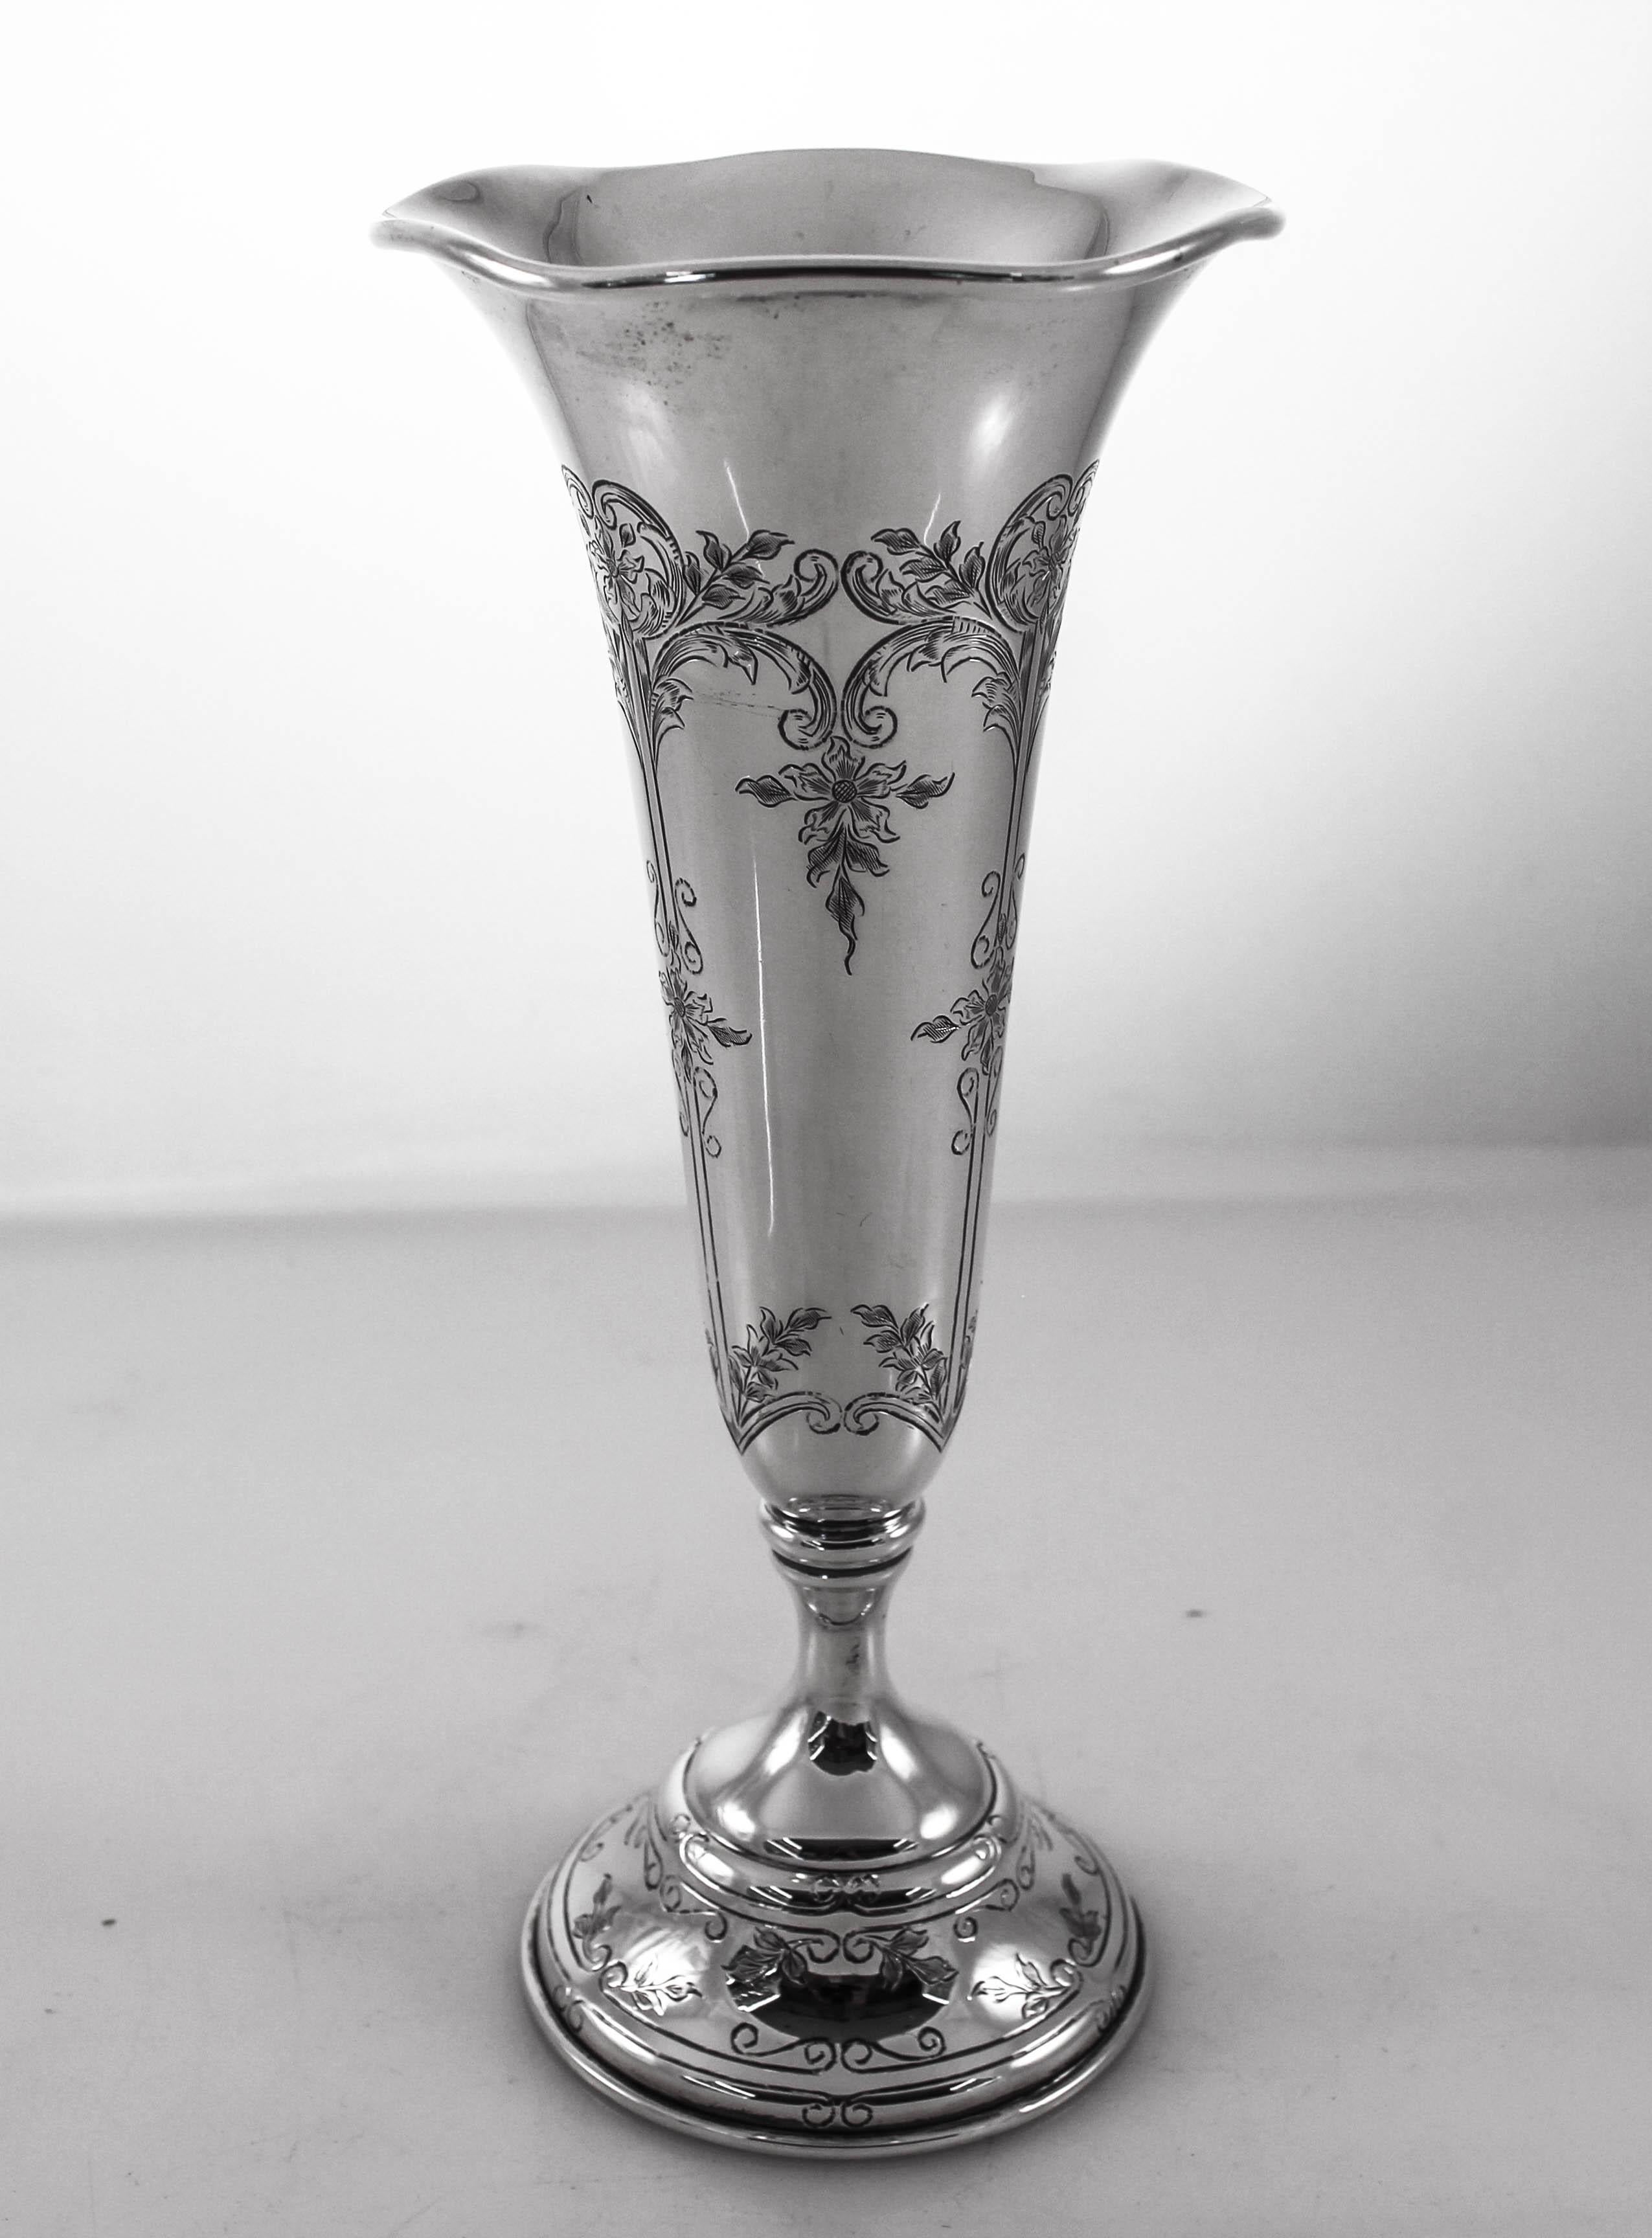 Wir sind stolz darauf, dieses Paar Vasen aus Sterlingsilber von Black, Starr und Frost aus dem frühen 20. Jahrhundert anbieten zu können. Sie haben feine Ätzungen um den Sockel und entlang des Schafts. Der Rand ist gezackt und öffnet sich, so dass